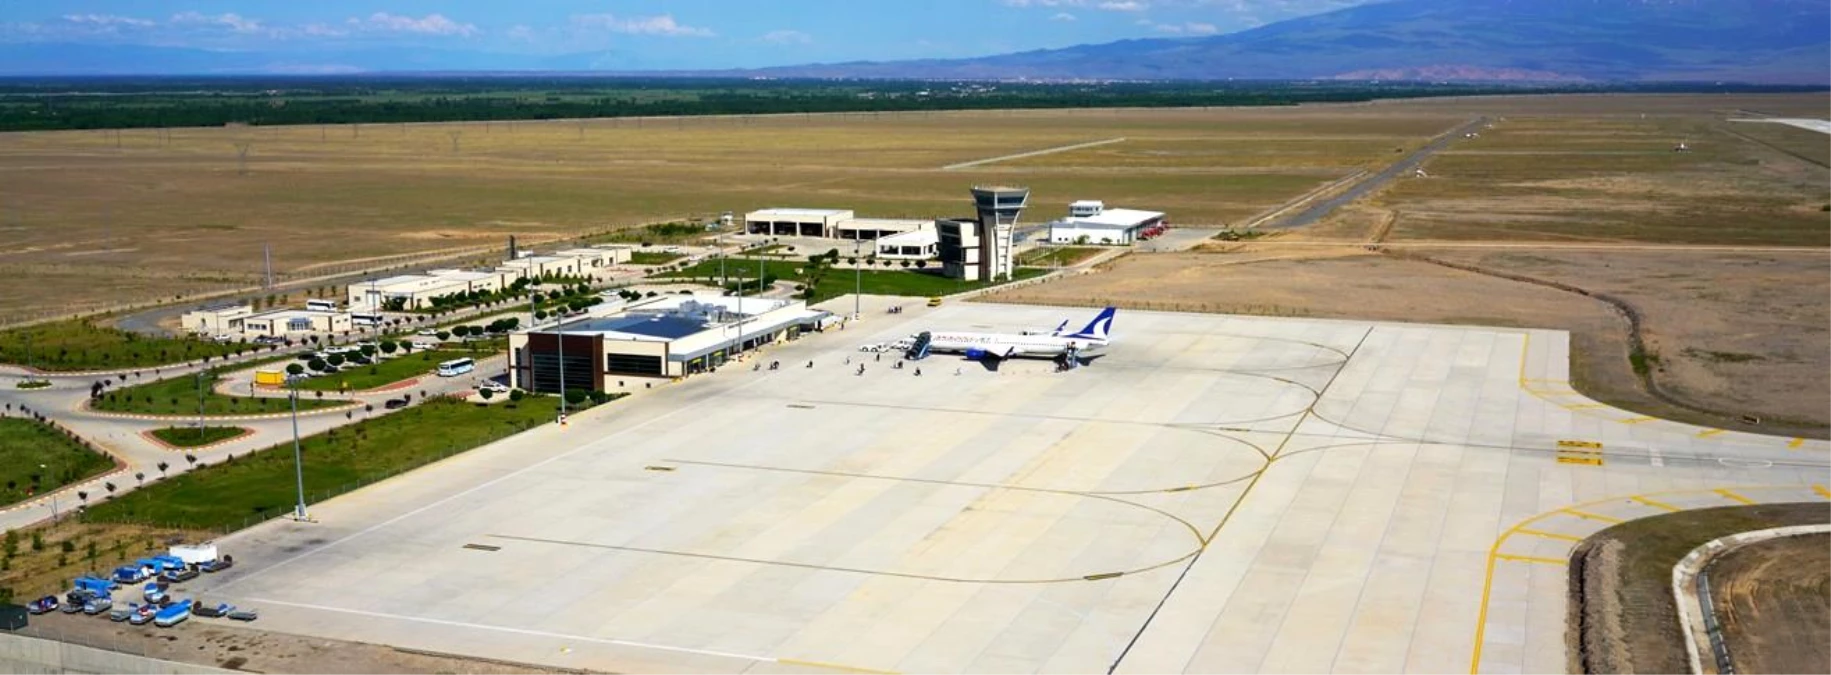 Son dakika haber! Iğdır Şehit Bülent Aydın Havalimanı Haziran ayında 25 bin 401 yolcuya hizmet verildi